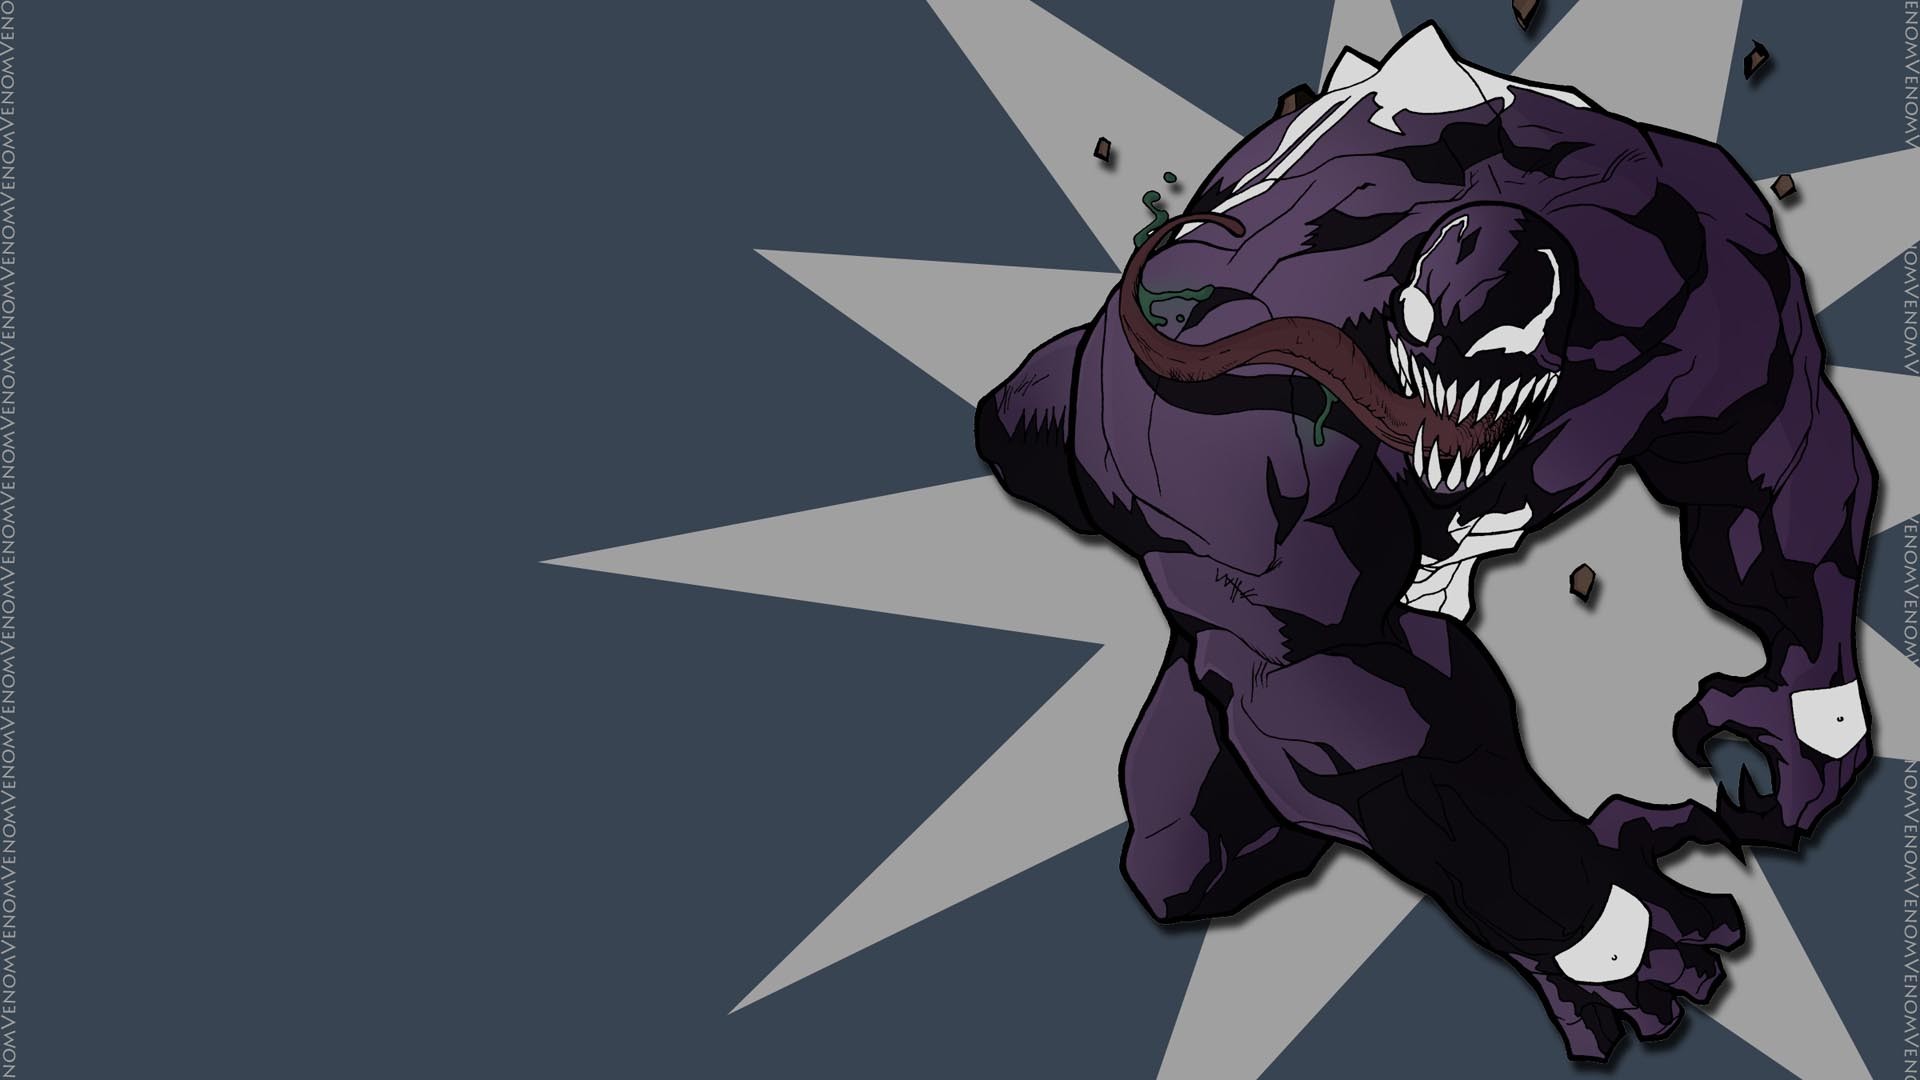 marvel venom wallpaper,personaje de ficción,dibujos animados,ilustración,supervillano